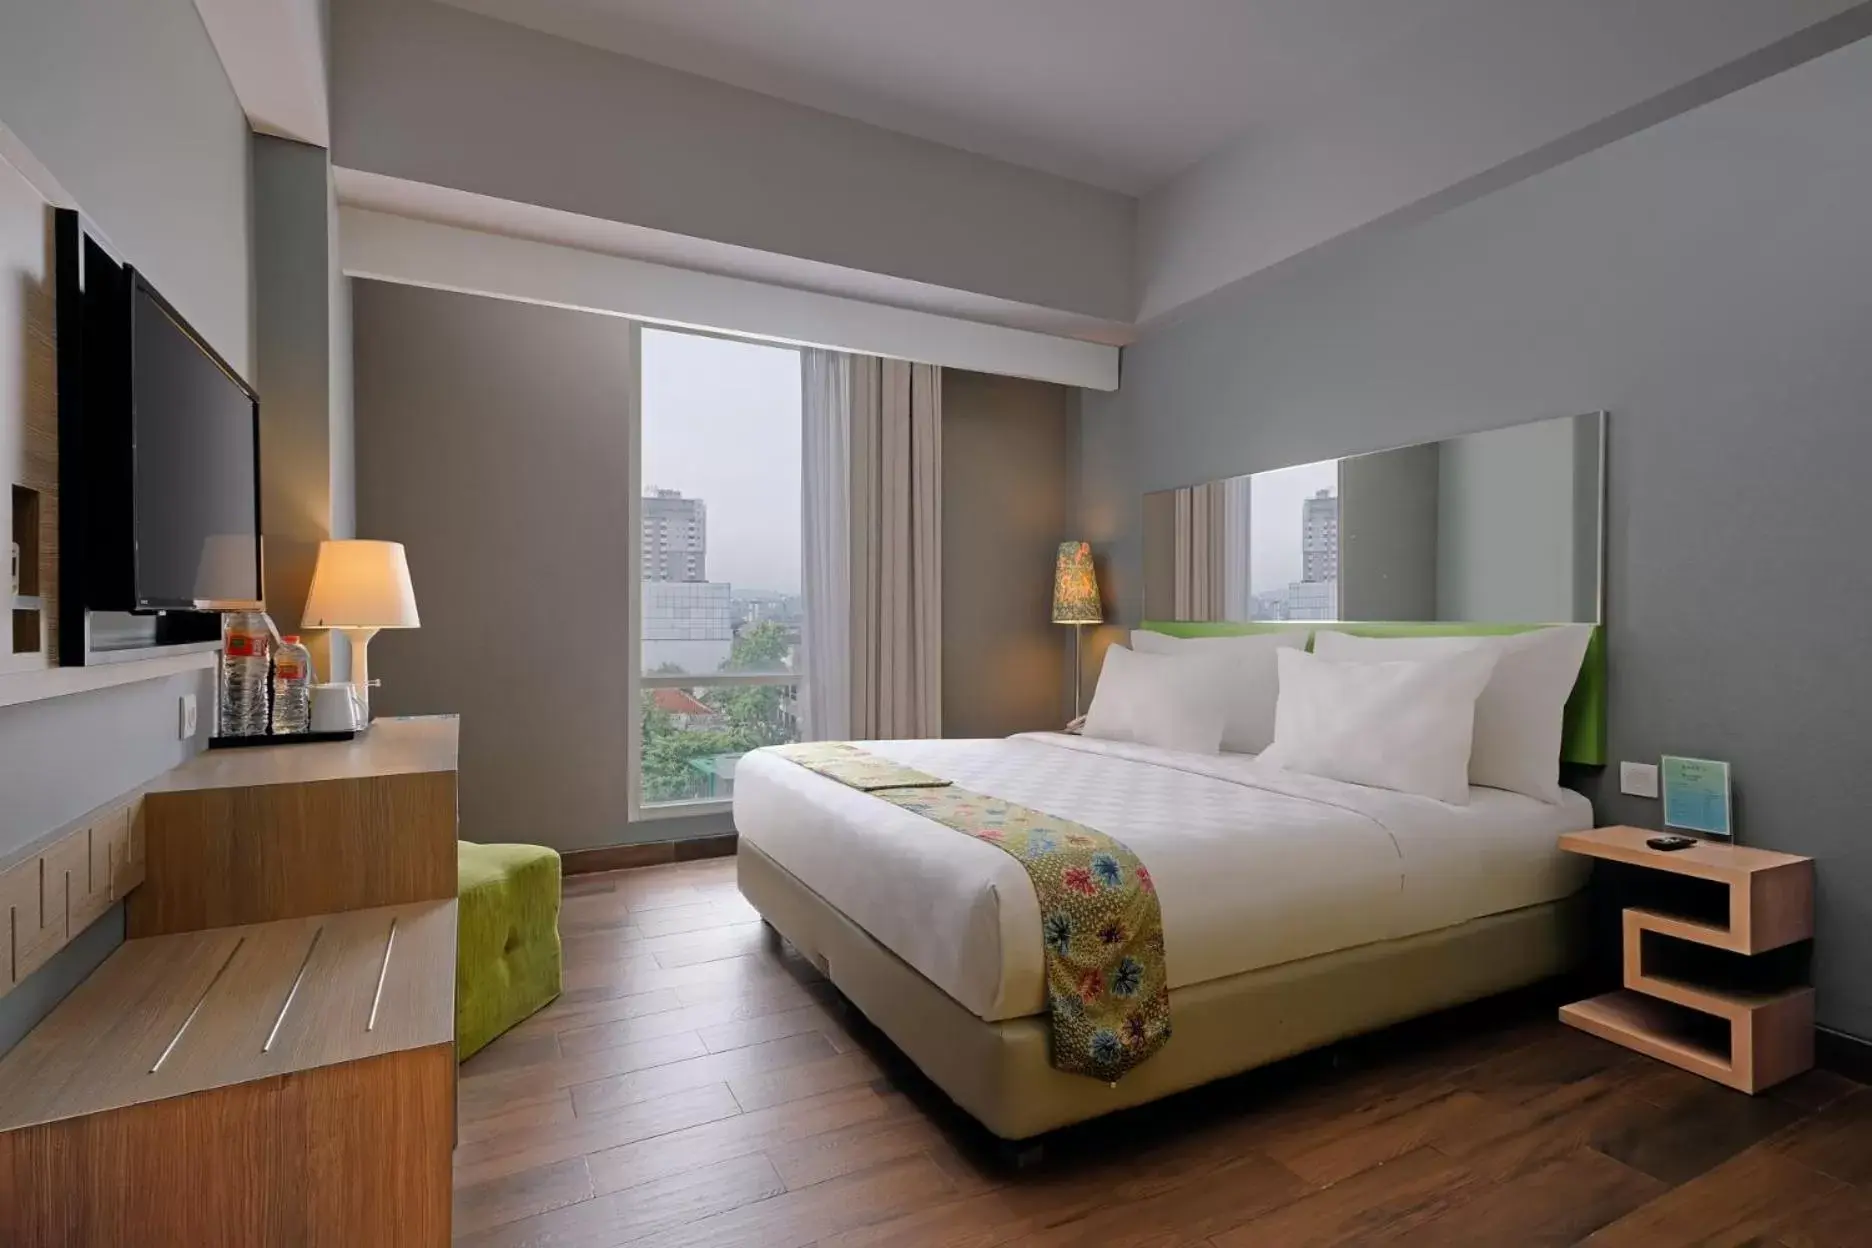 Bed in KHAS Semarang Hotel